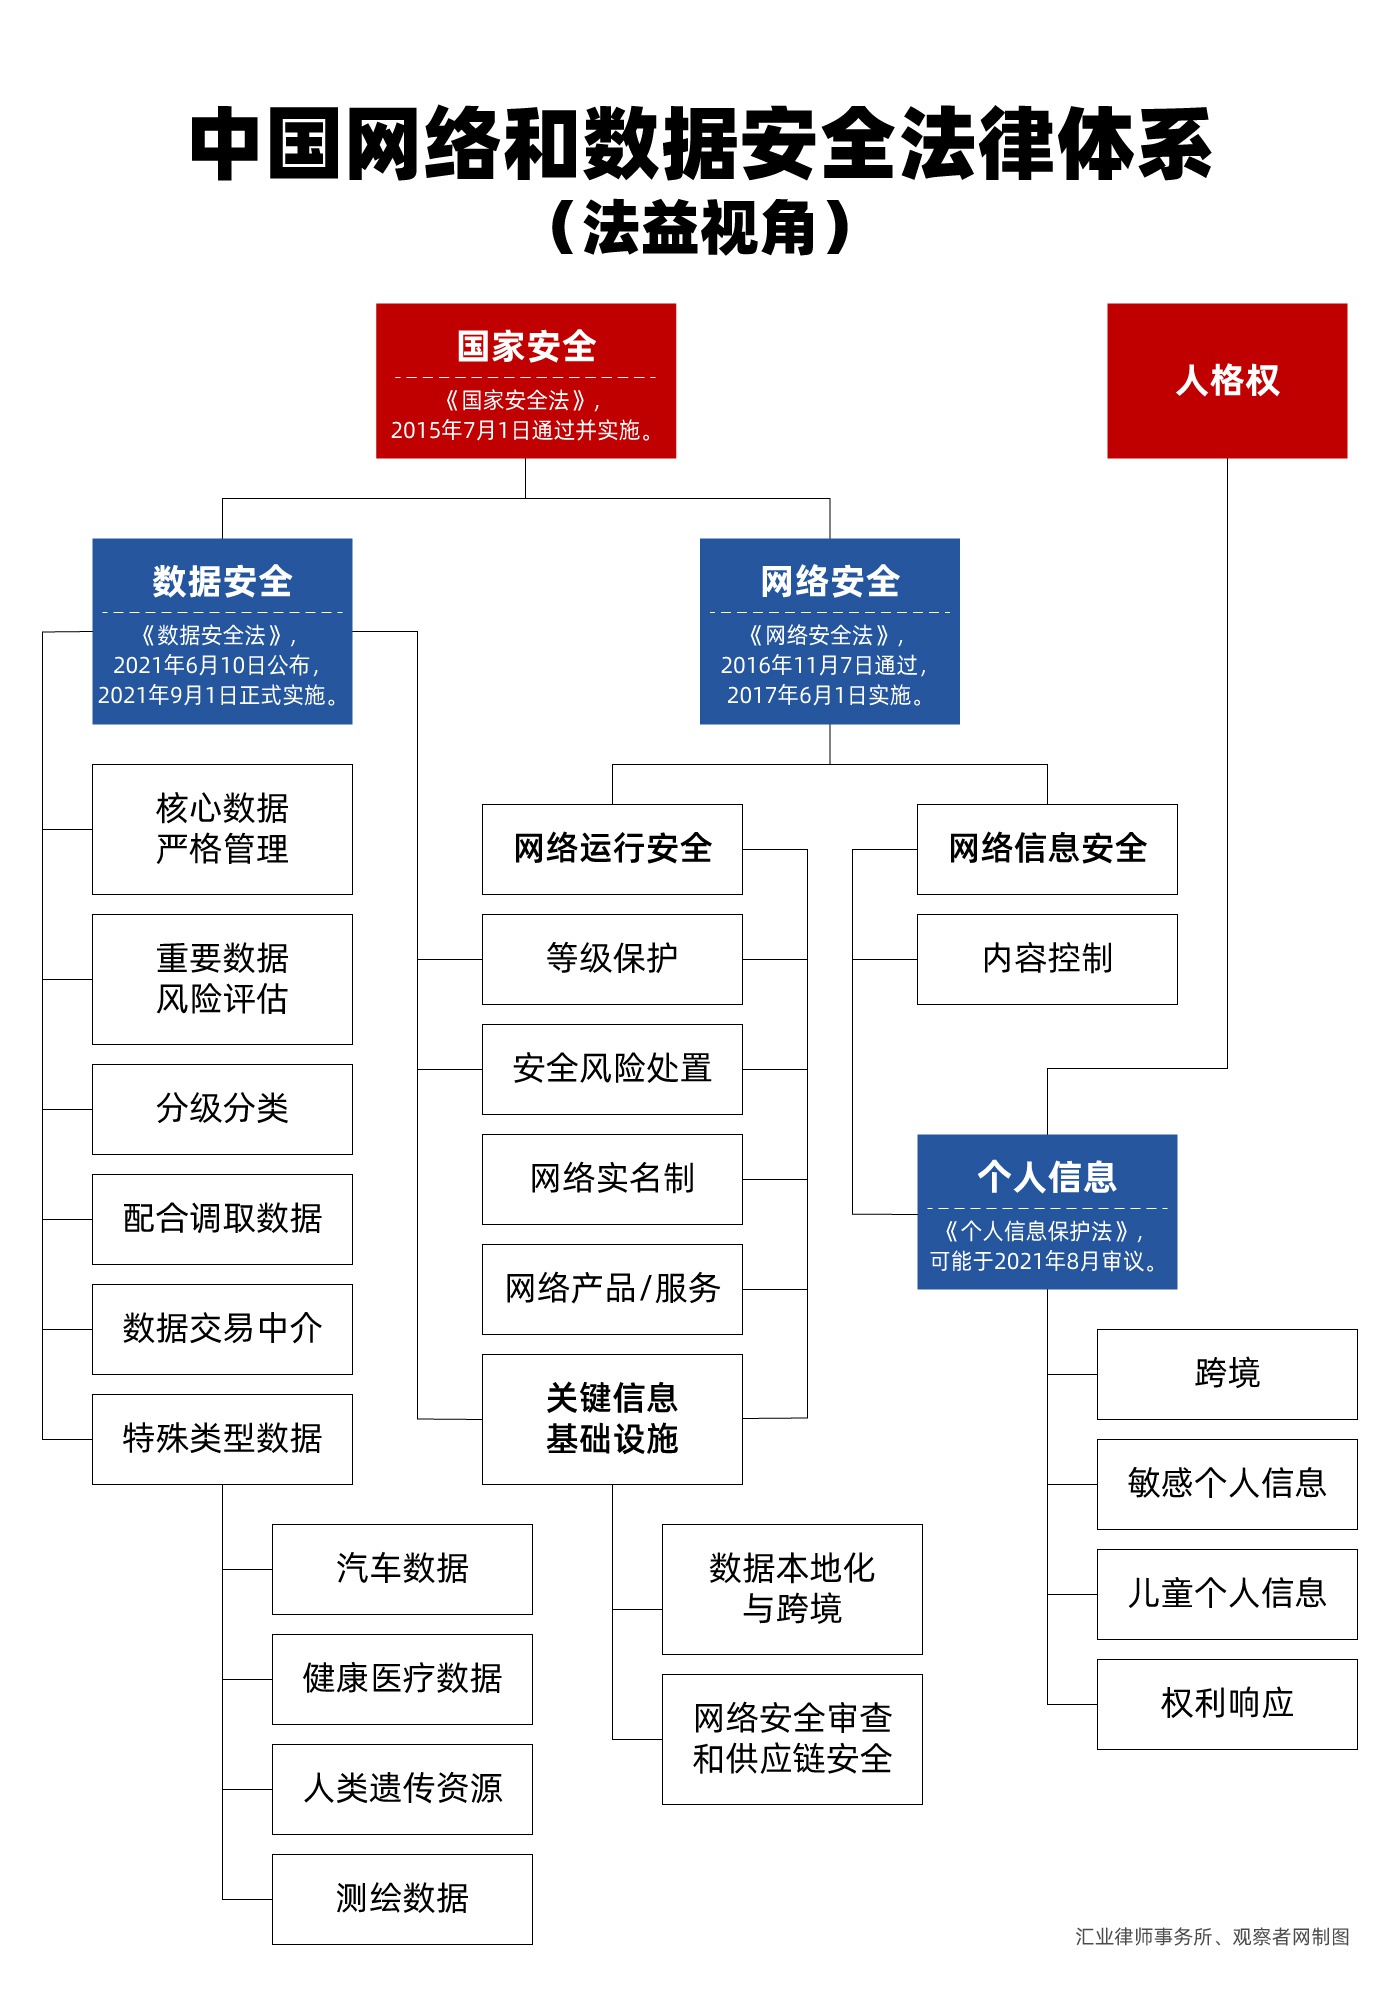 李天航:从“网络安全审查”看中国网络和数据治理的法律体系